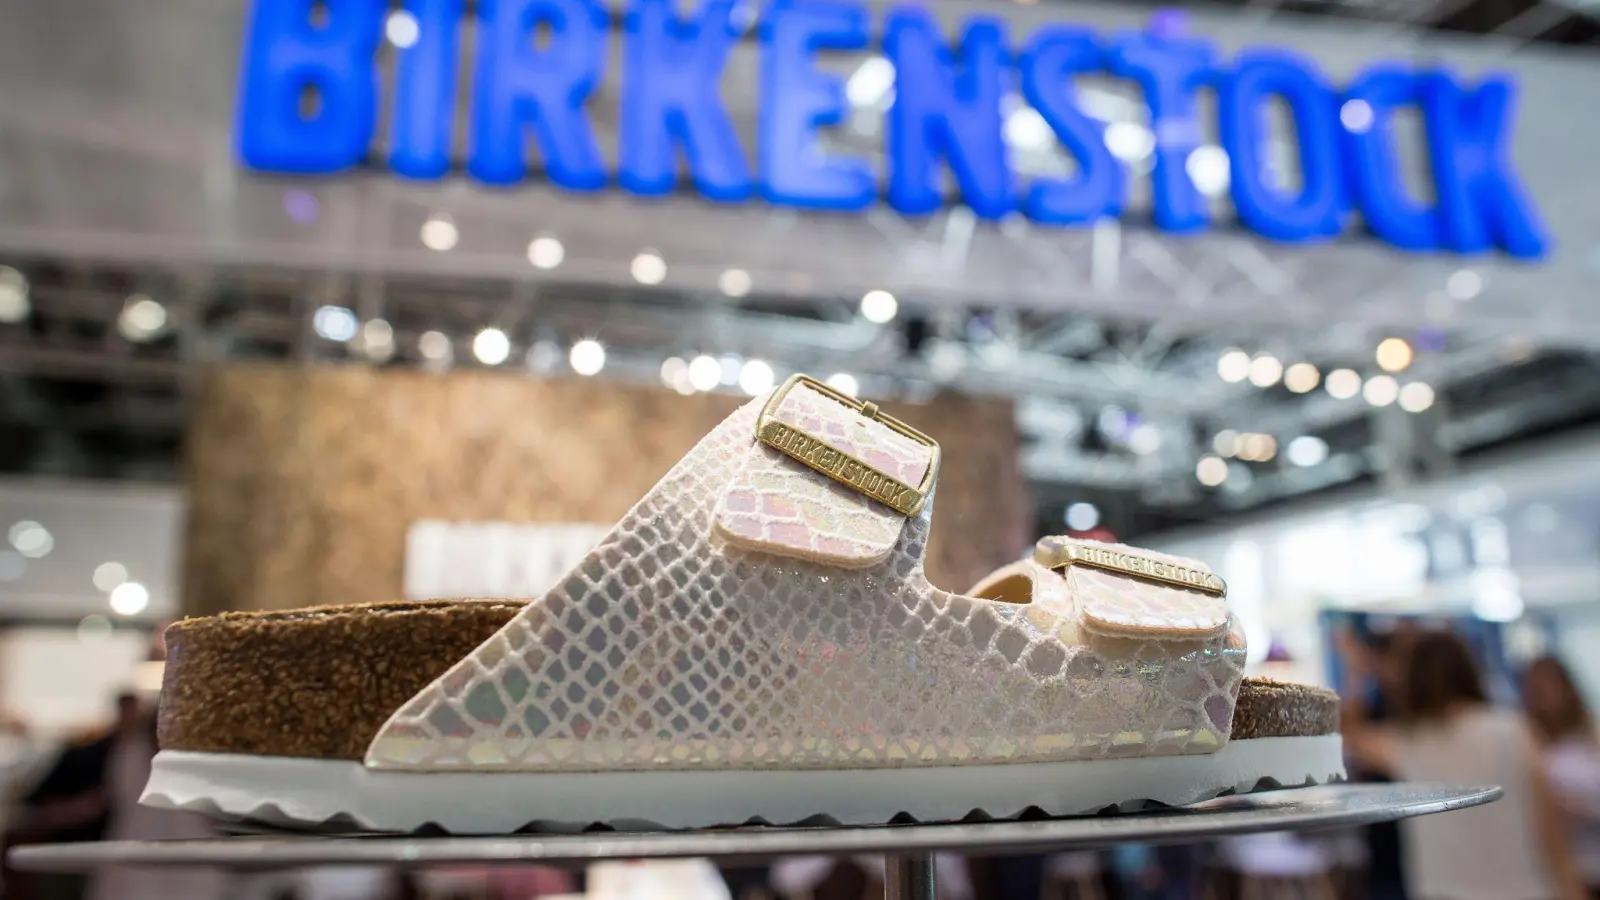 Schuh mit Tradition: Die Ursprünge von Birkenstock reichen nach Unternehmensangaben fast 250 Jahre bis 1774 zurück. (Foto: Maja Hitij/dpa)